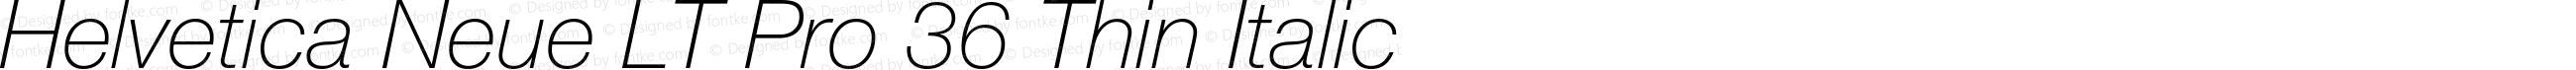 HelveticaNeueLT Pro 35 Th Italic